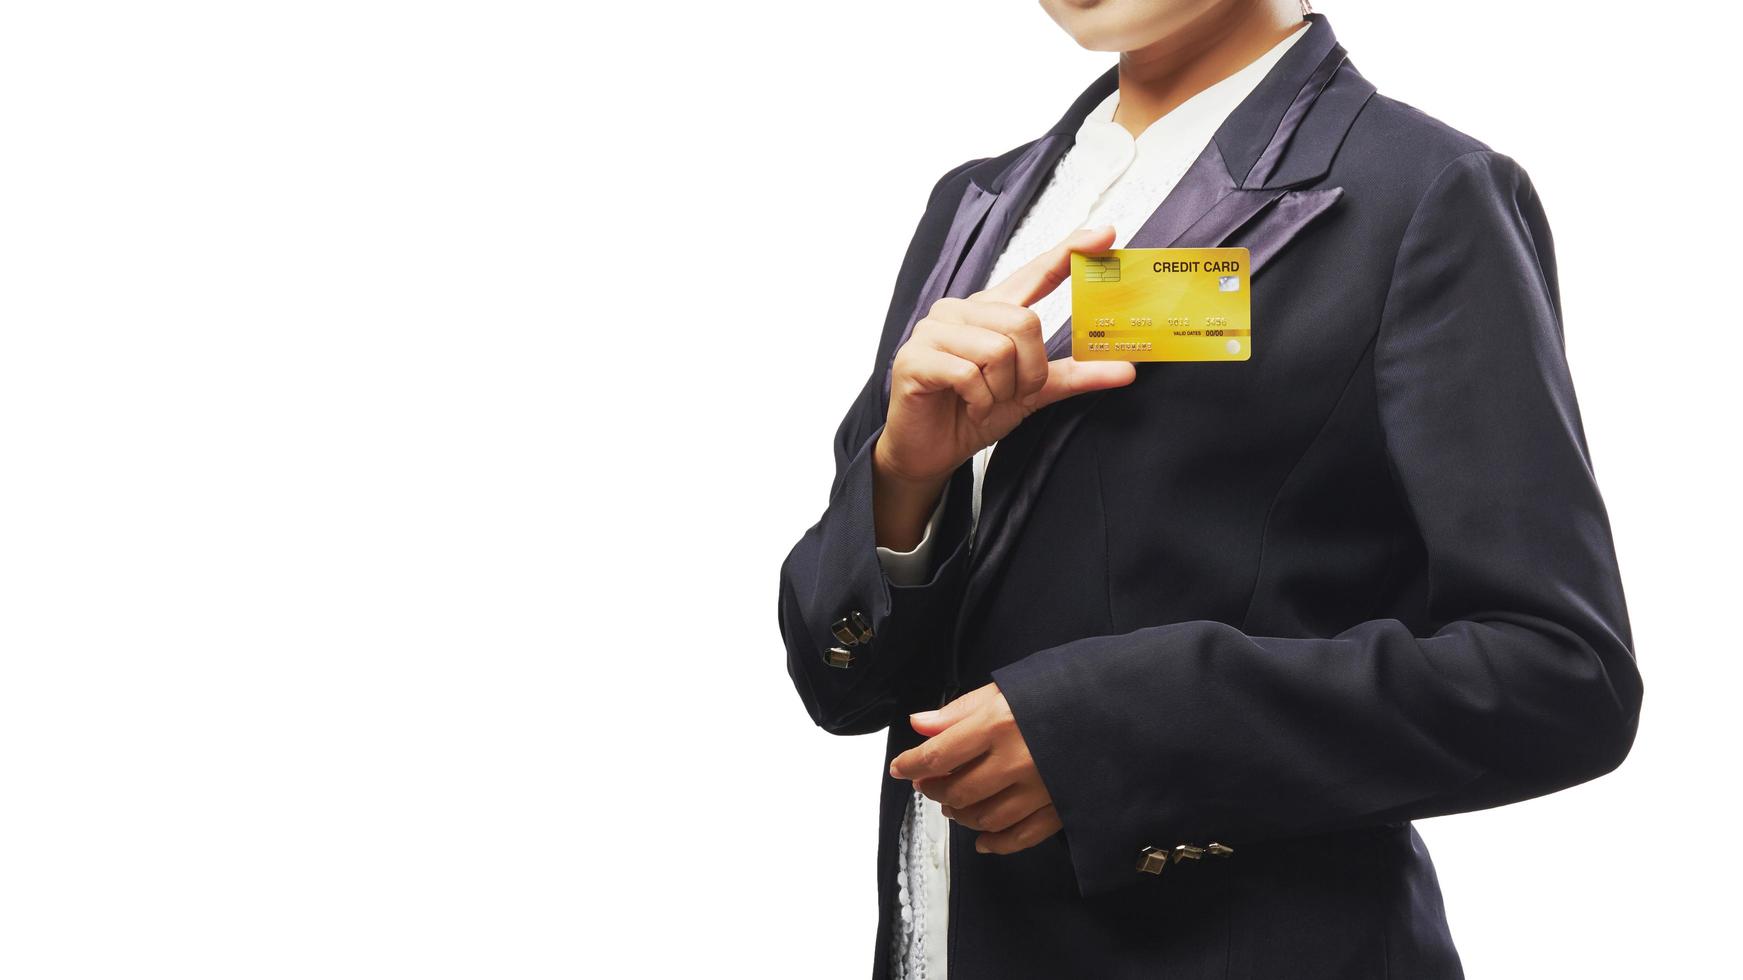 affärskvinna som håller kreditkort foto